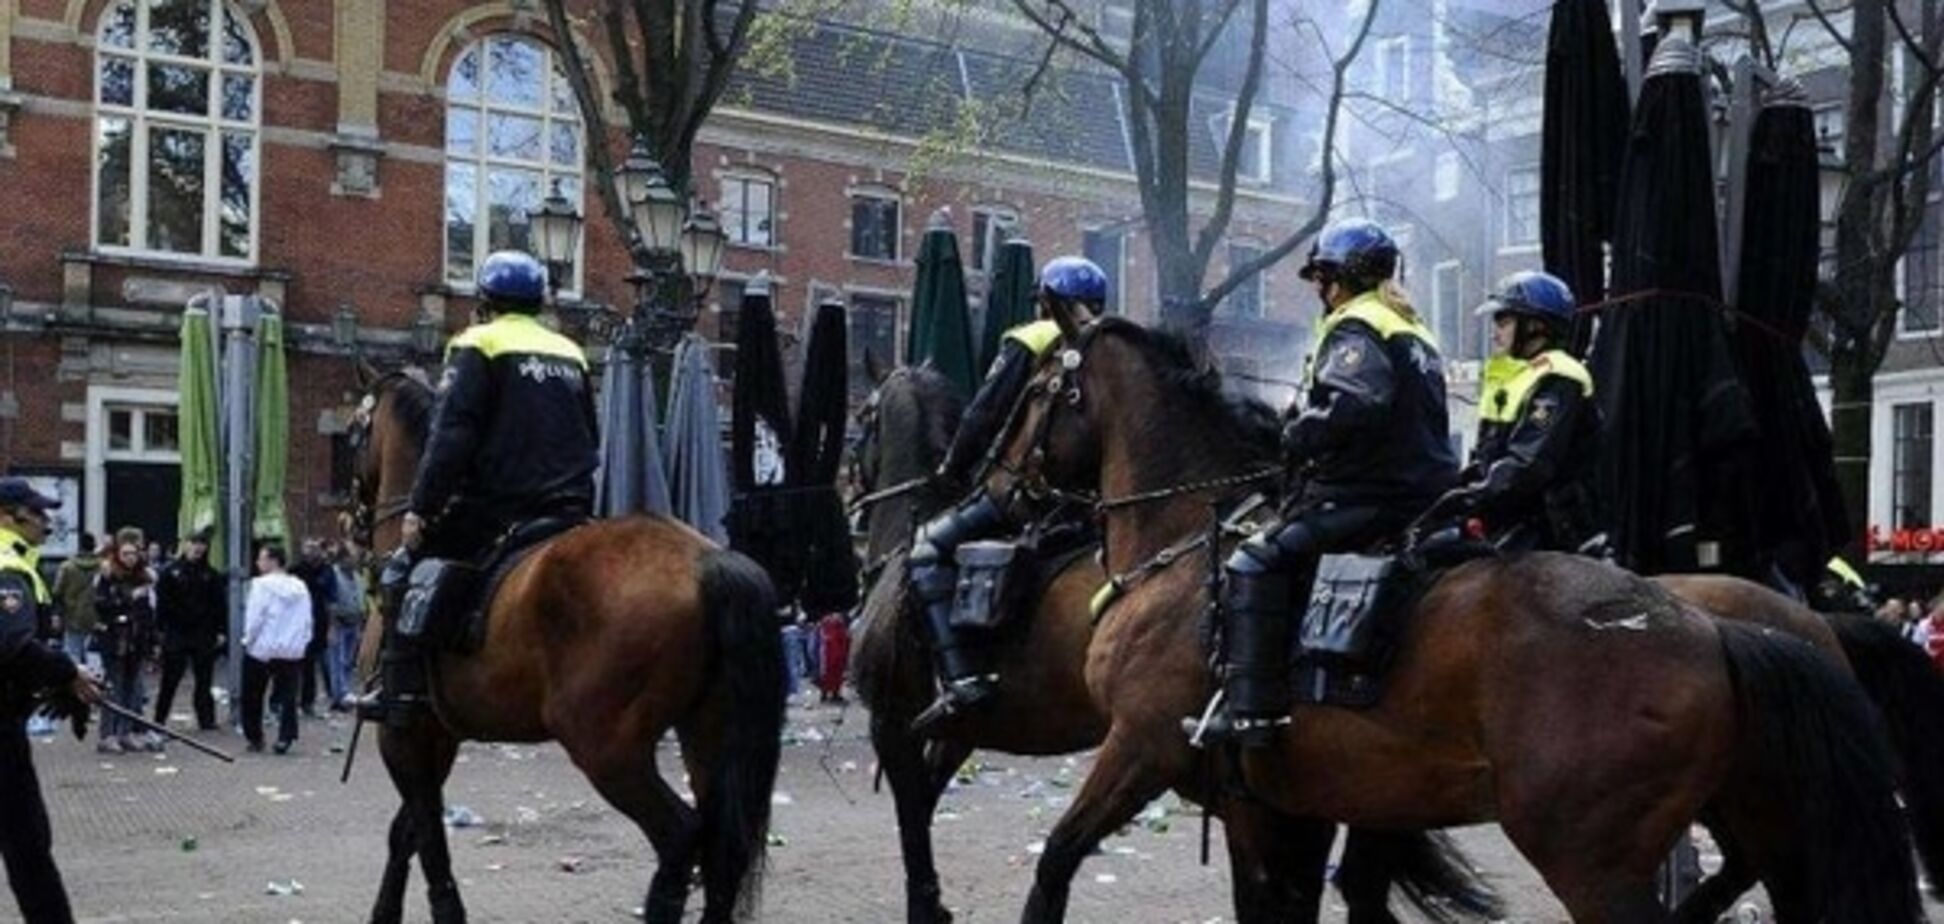 Побоище дня: футбольные фанаты разгромили центр Амстердама